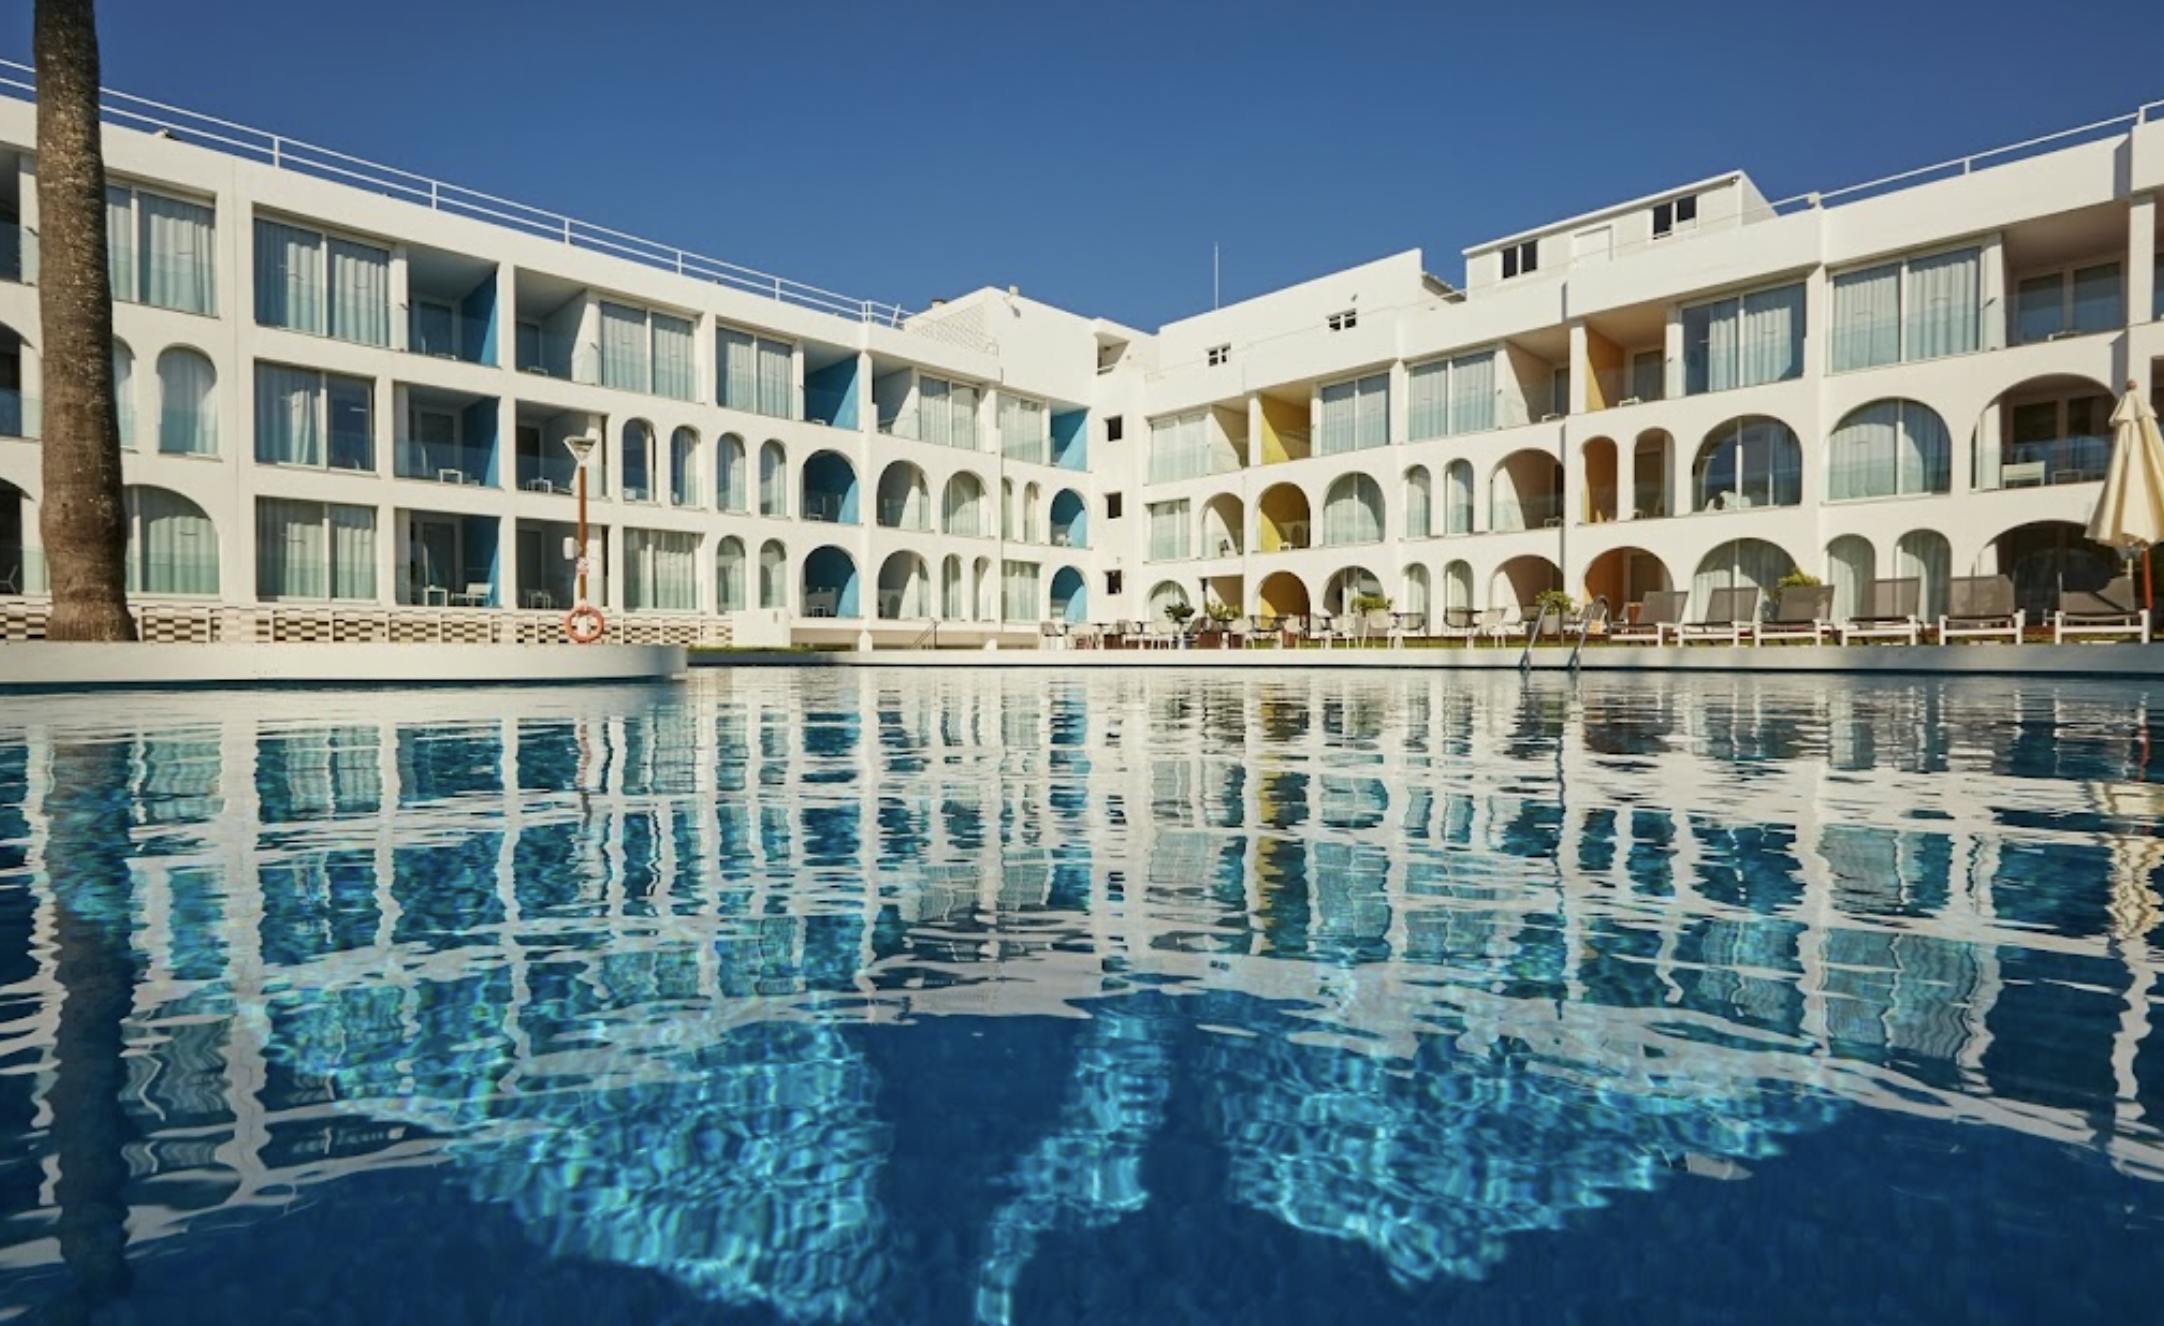 Ebano Hotel Apartments & Spa